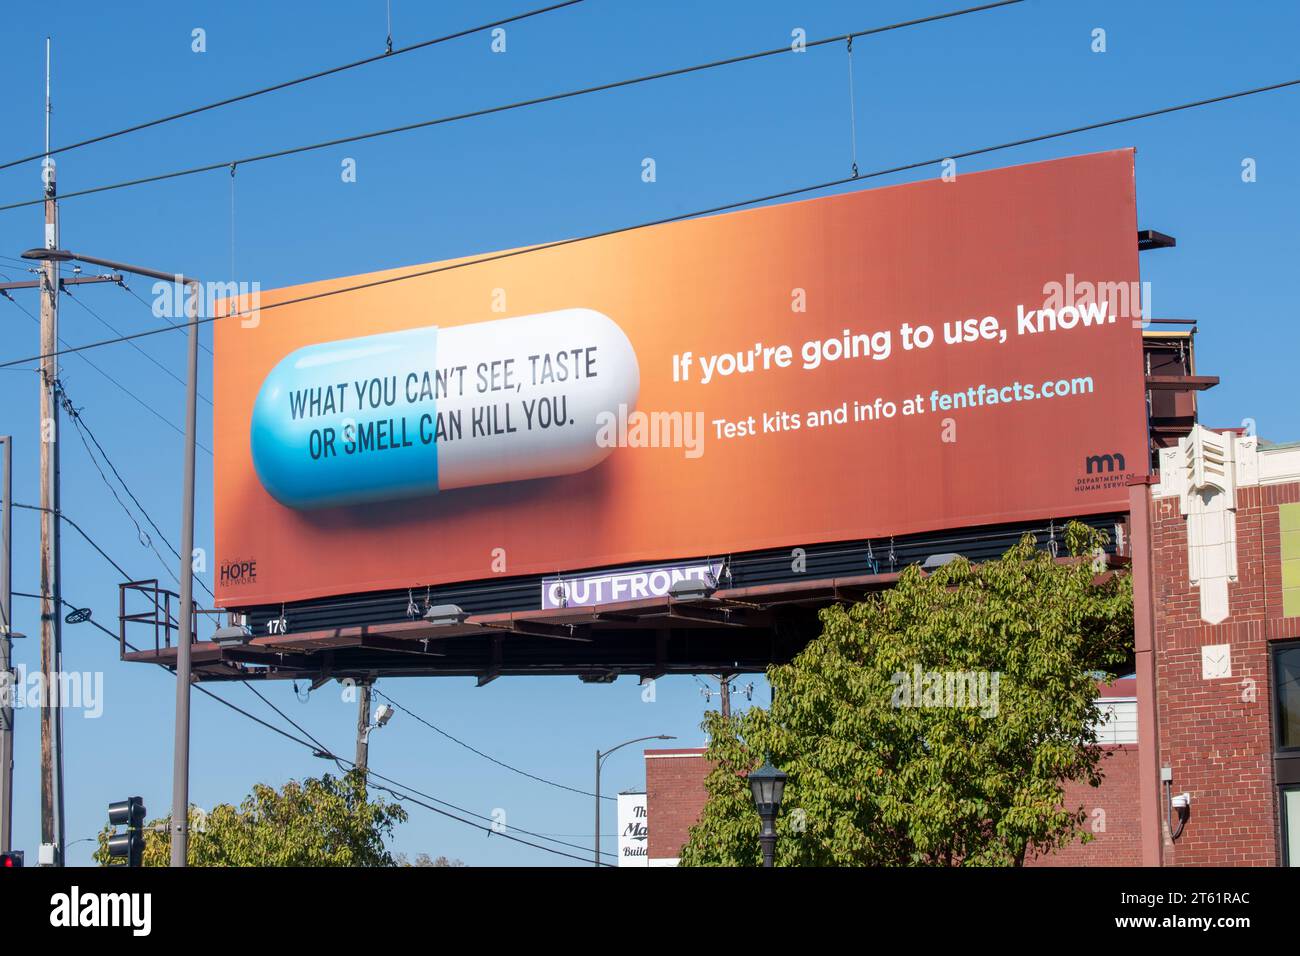 St. Paul, Minnesota. Panneaux publicitaires pour kits de test et informations pour les consommateurs de drogues. Banque D'Images